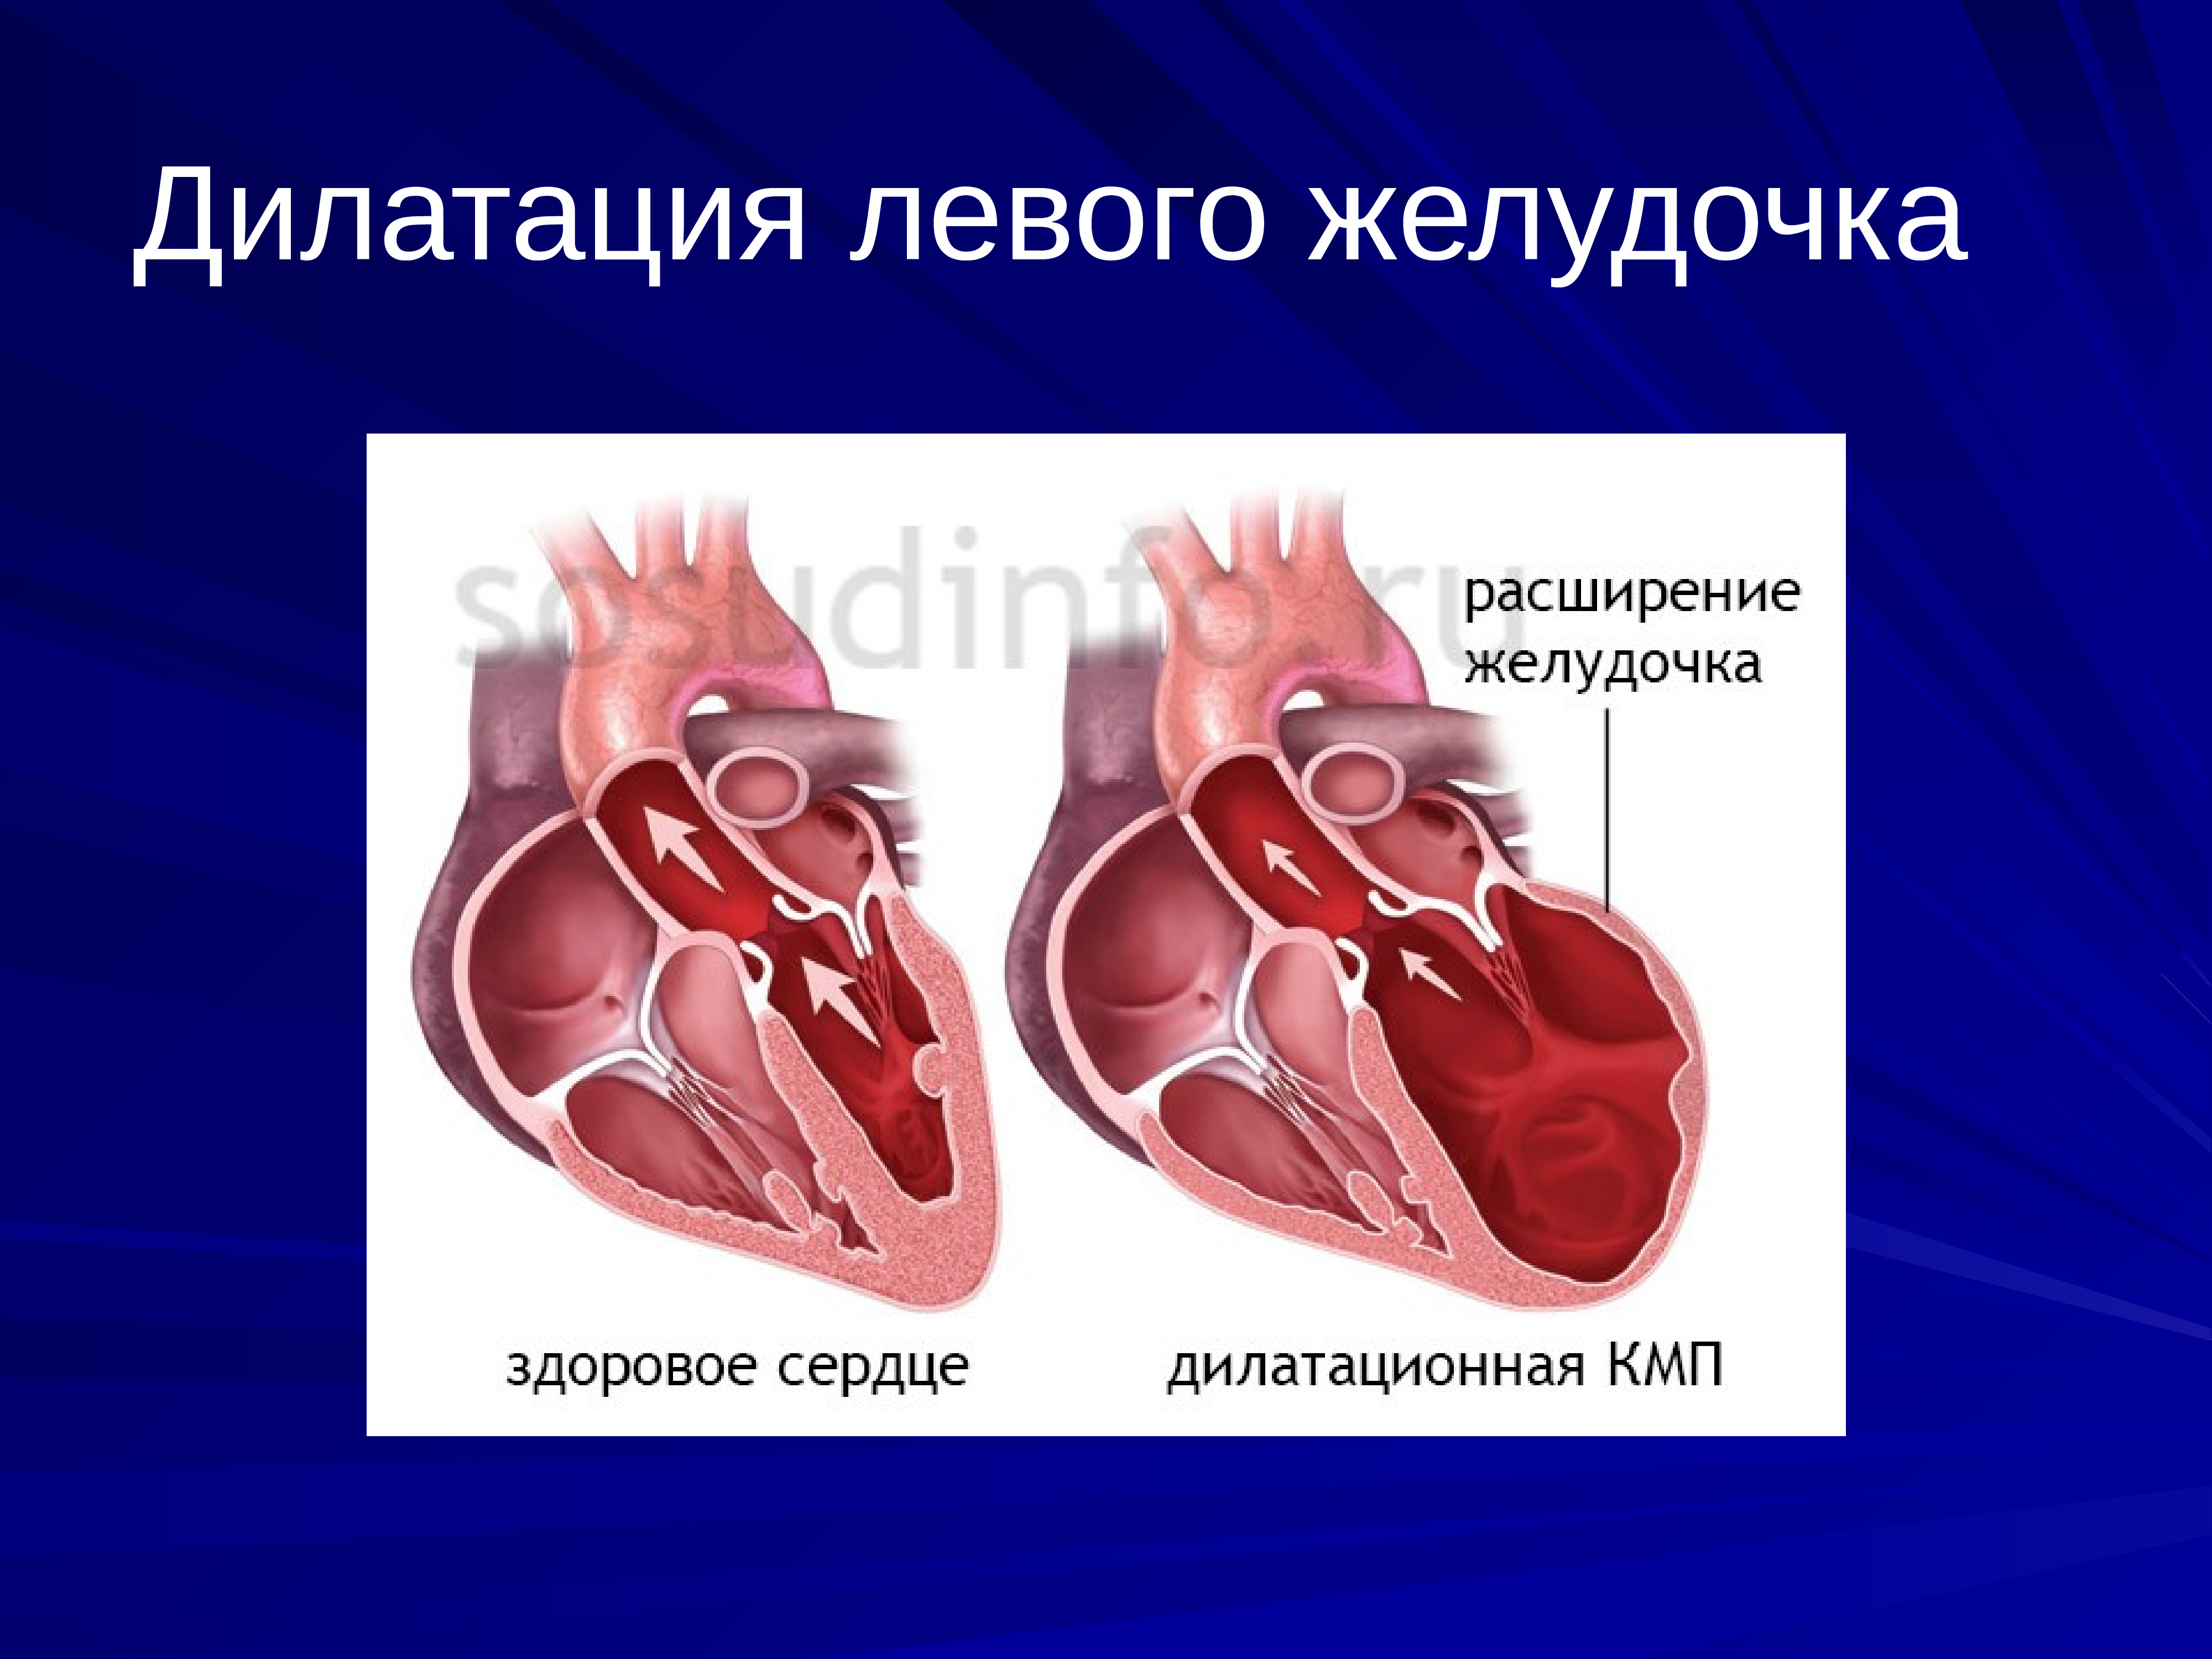 Желудочка сердца расширена. Дилатация предсердий и желудочков. Дилатация левого желудочка сердца. Дилатация желудочков сердца. Дилатация левых отделов сердца.